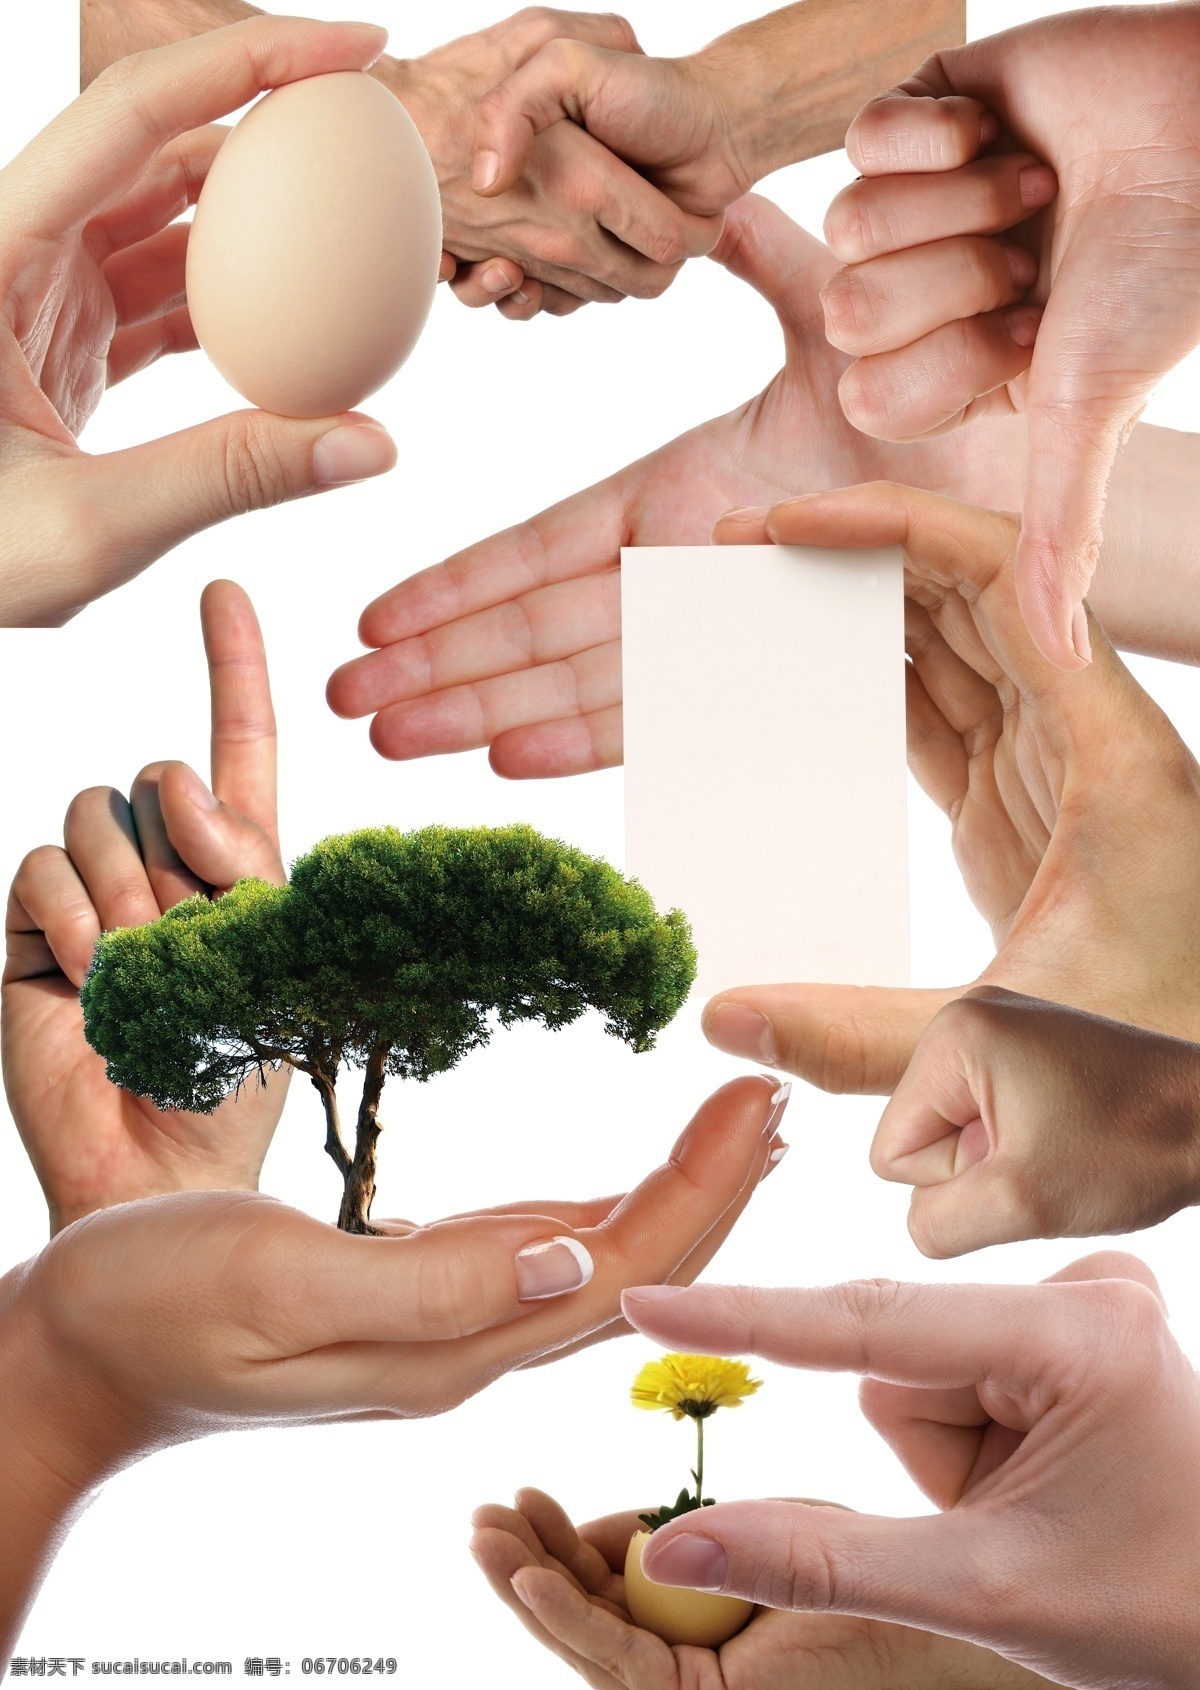 公益 手 手势 动作 捧着树的手 拿鸡蛋的手 拿花的手 握手 真棒 拳头 手指